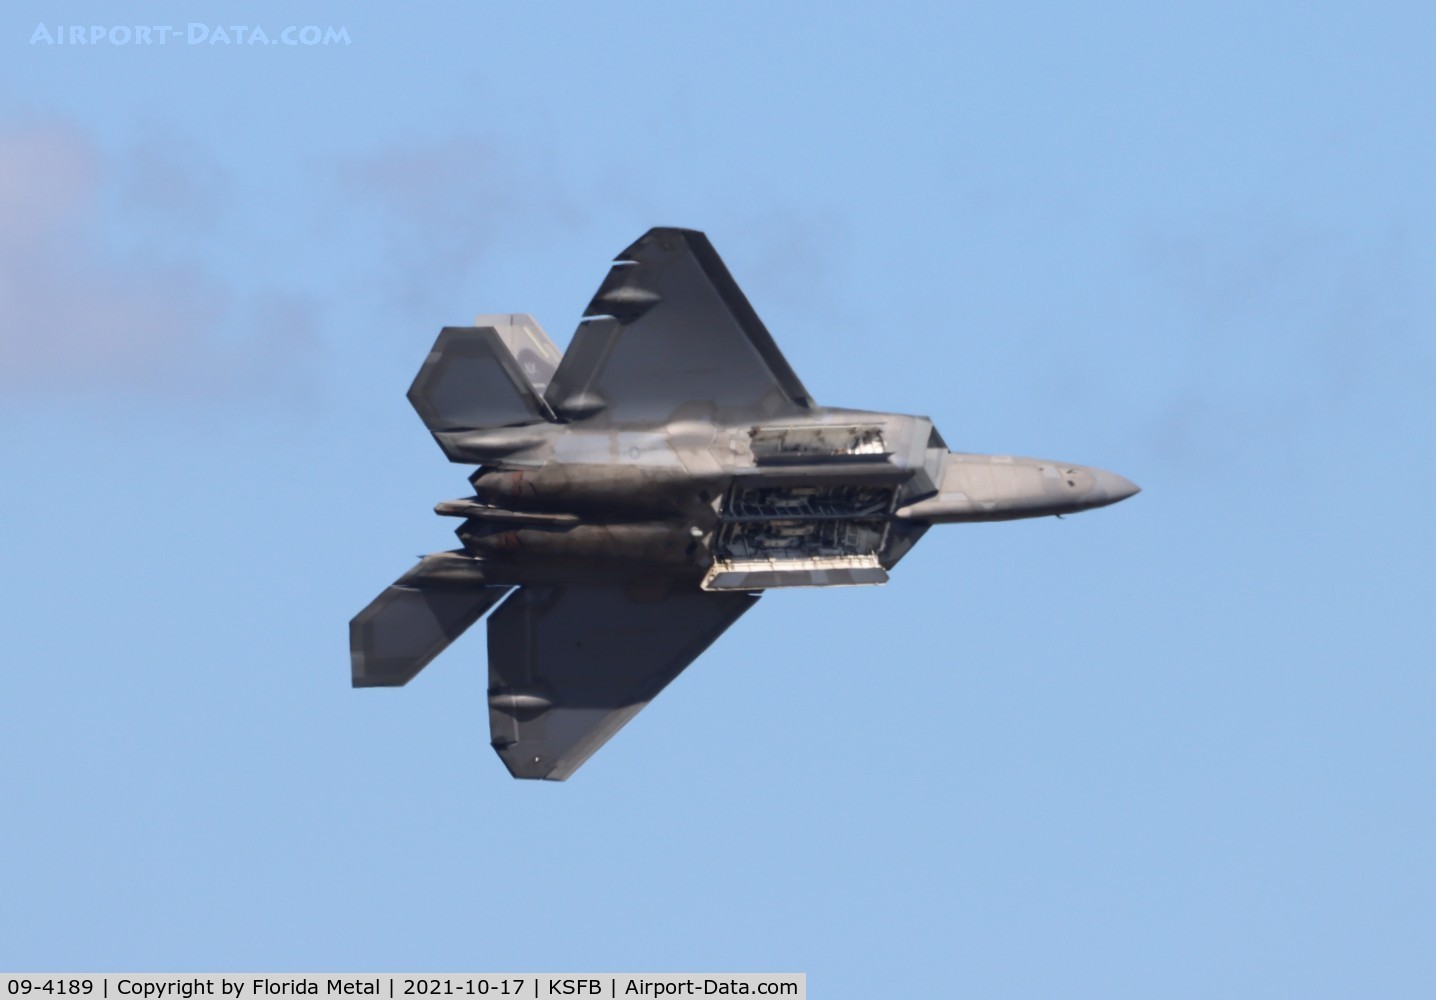 09-4189, 2009 Lockheed Martin F-22A Raptor C/N 645-4189, Sanford 2021 zx